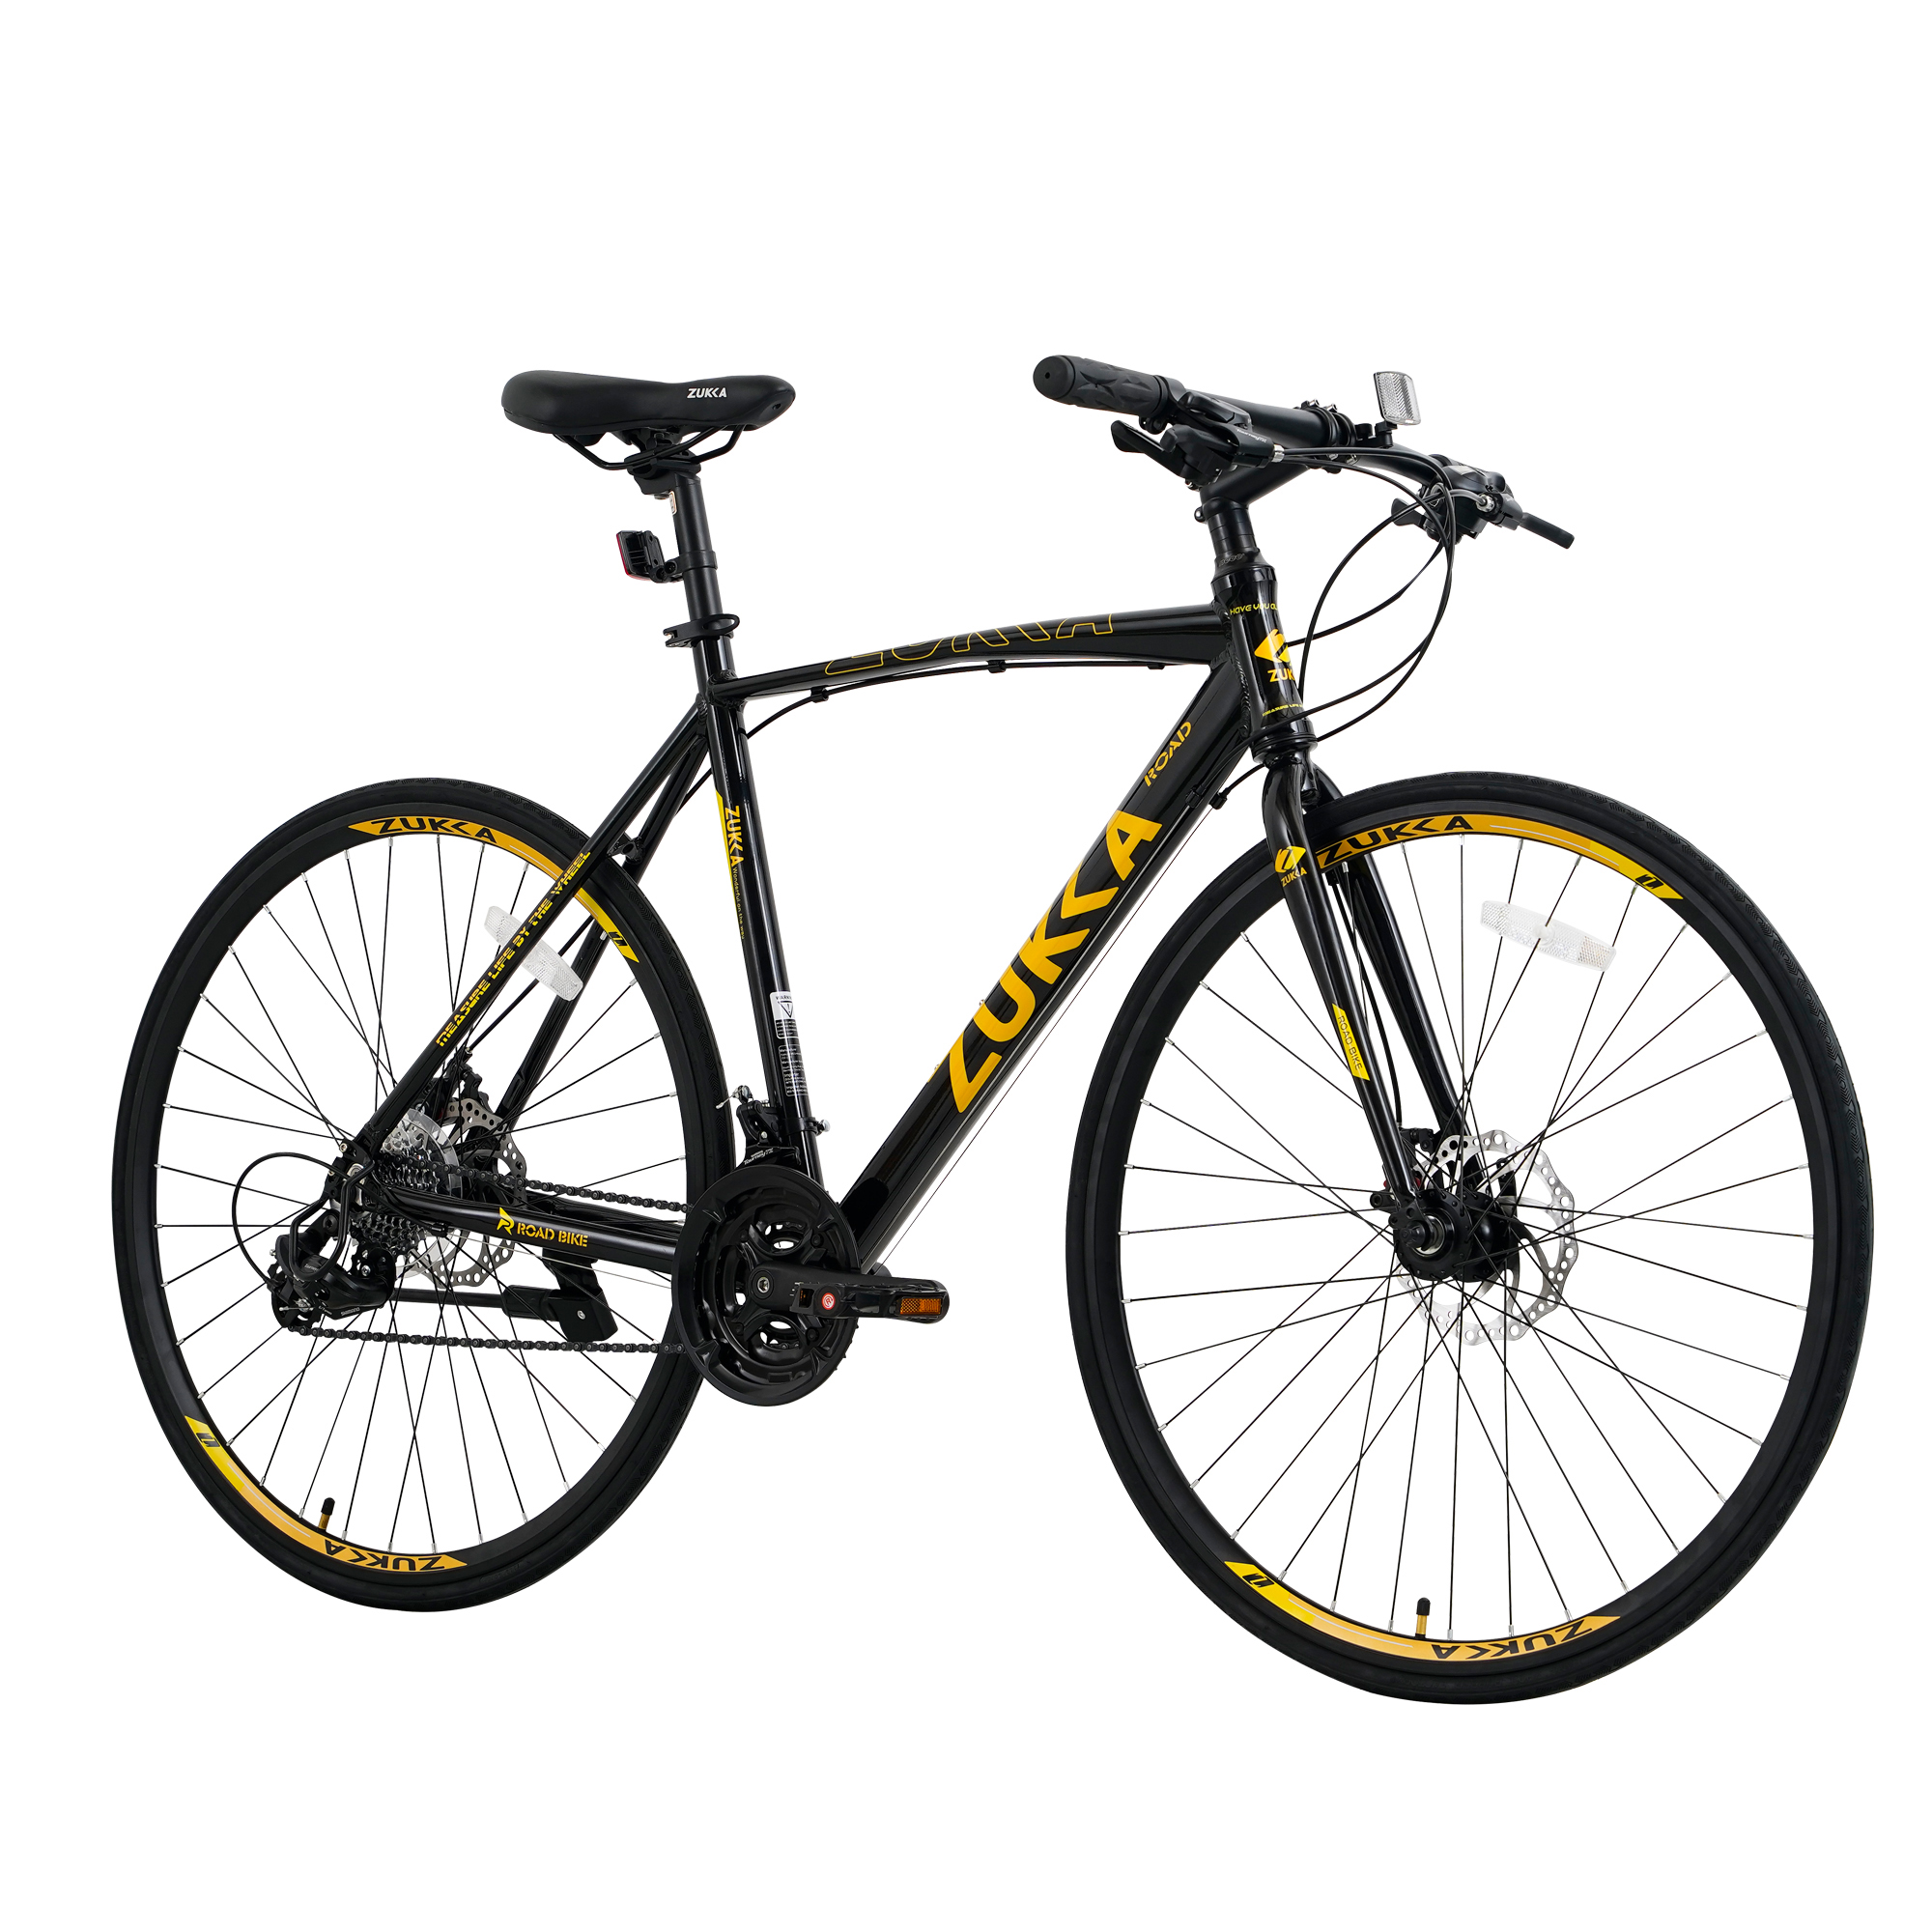 Zukka Road Bike 700C 24 Speed Aluminum Alloy Frame Bicycle for Unisex Adult Hybrid Bike Black - image 5 of 6